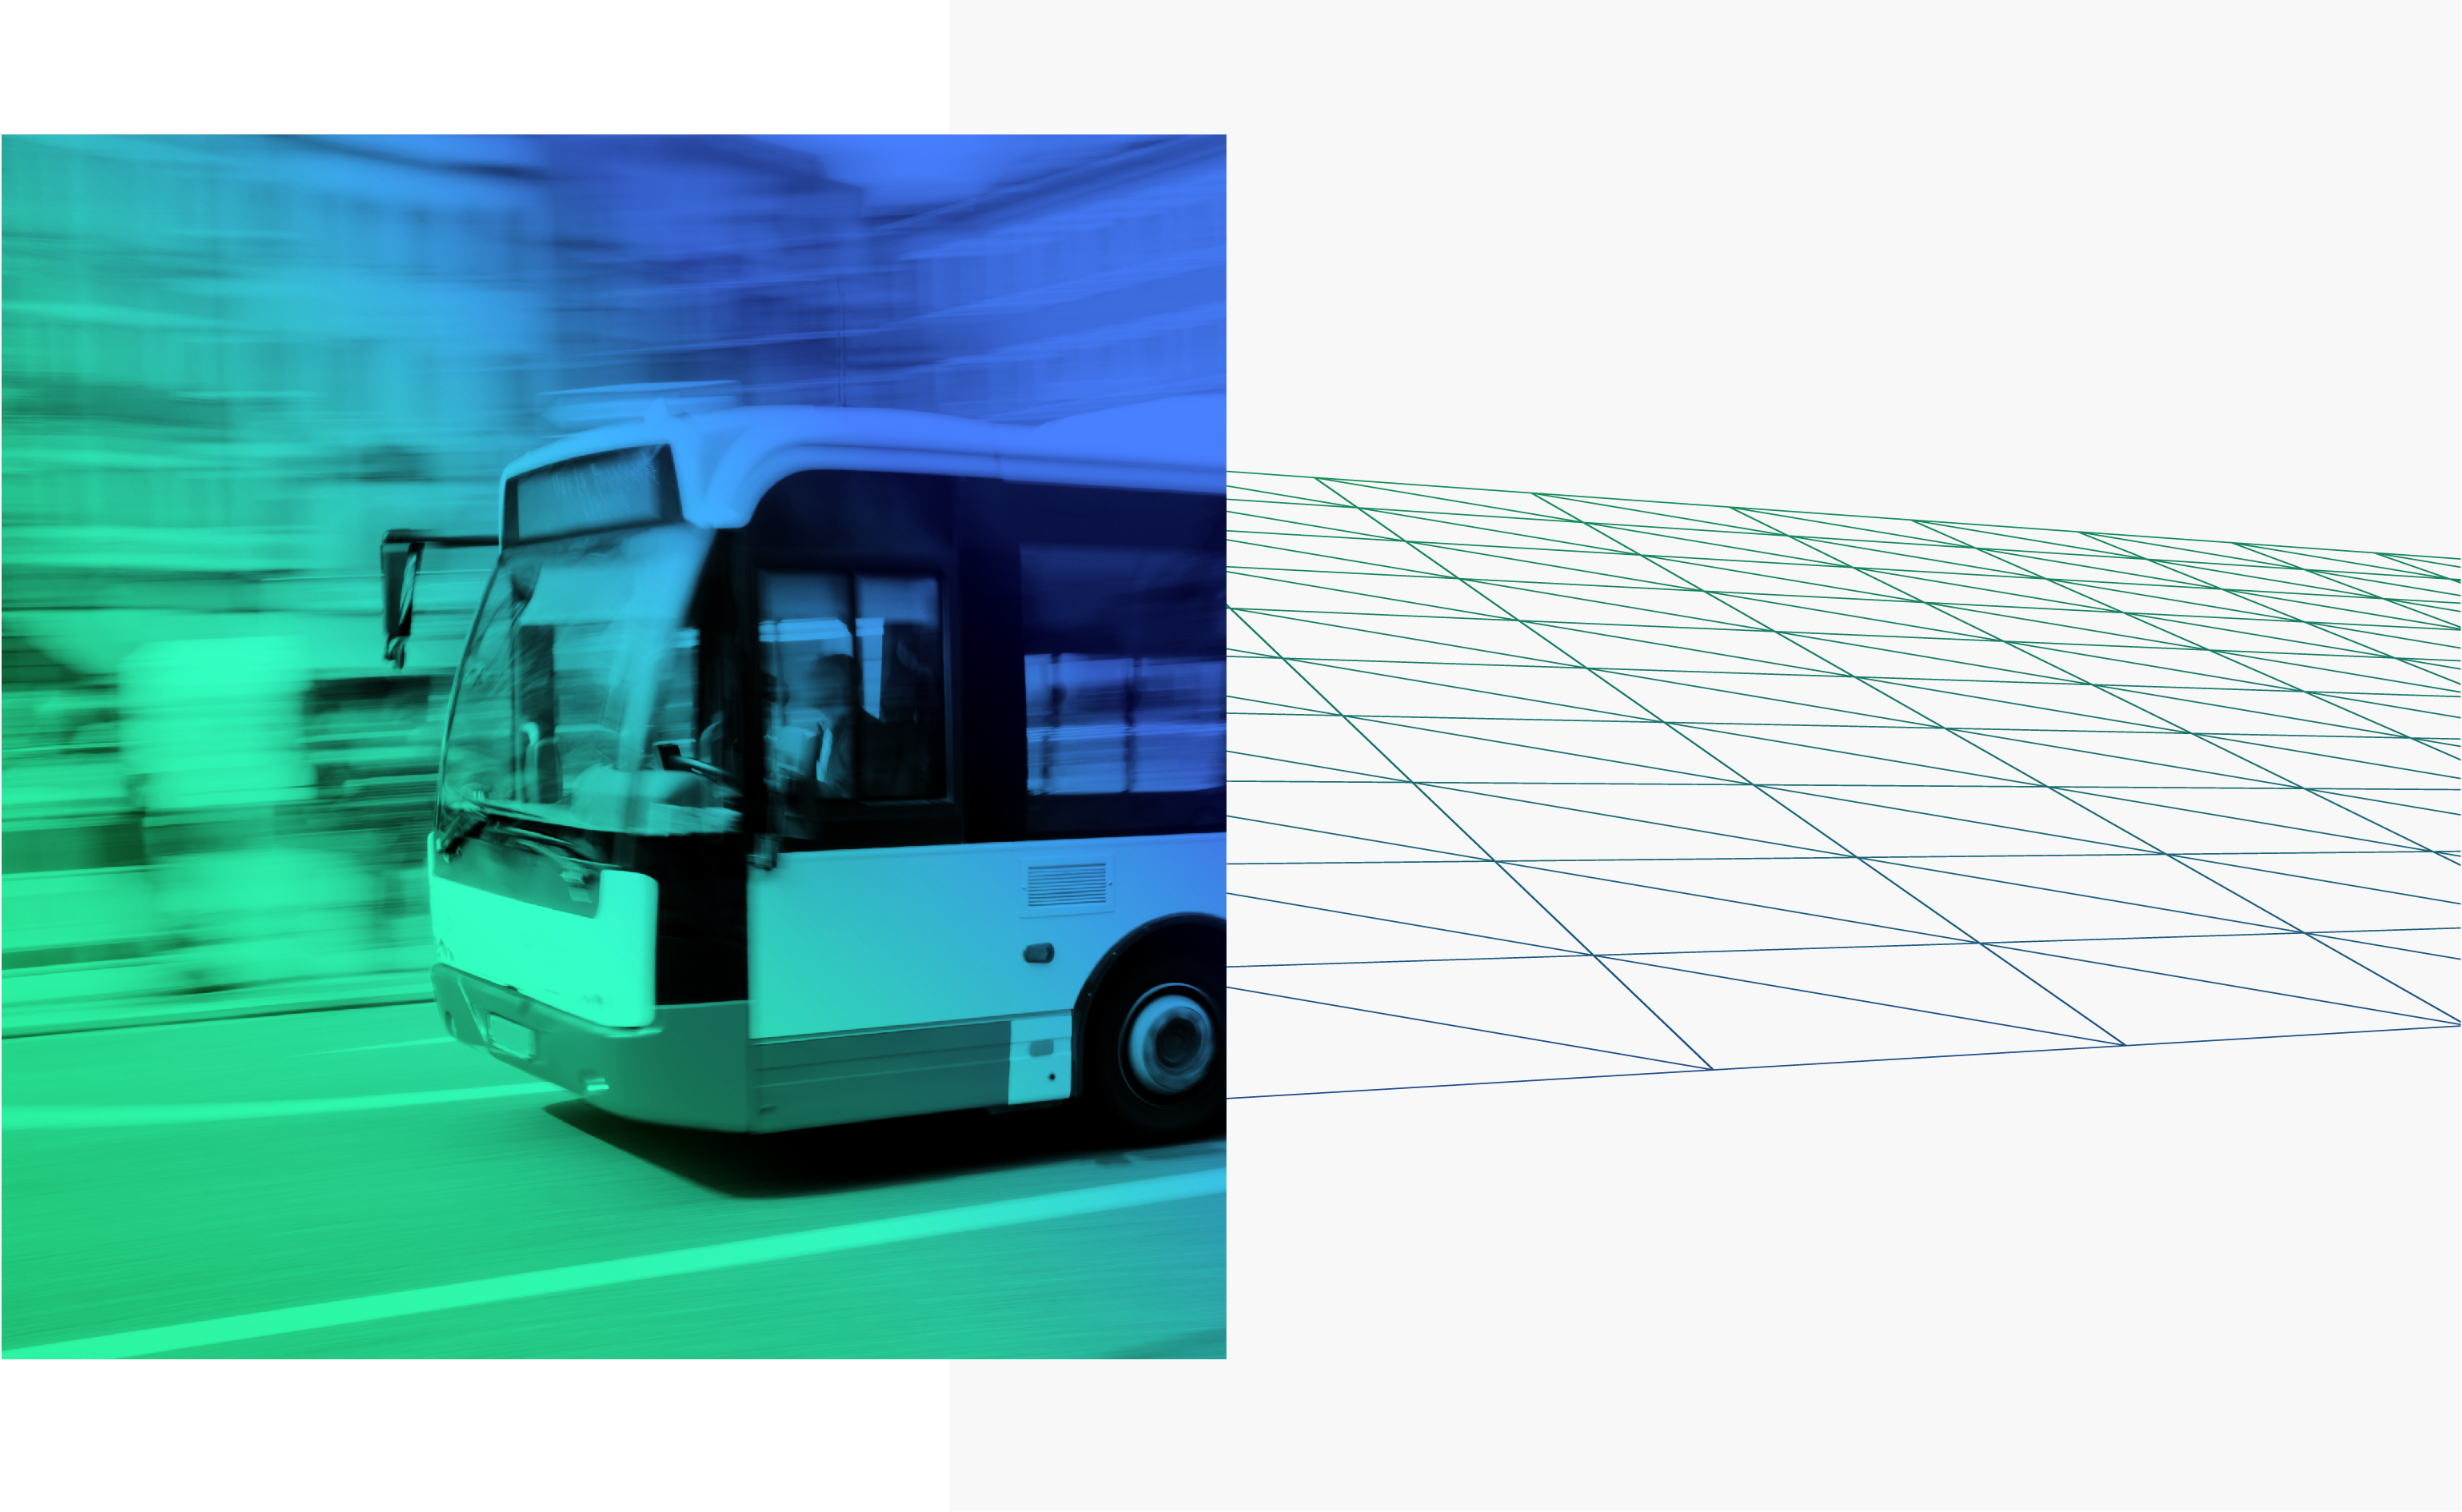 Глава ГТЛК Евгений Дитрих высказался за «коробочные решения» по модернизации общественного транспорта в регионах